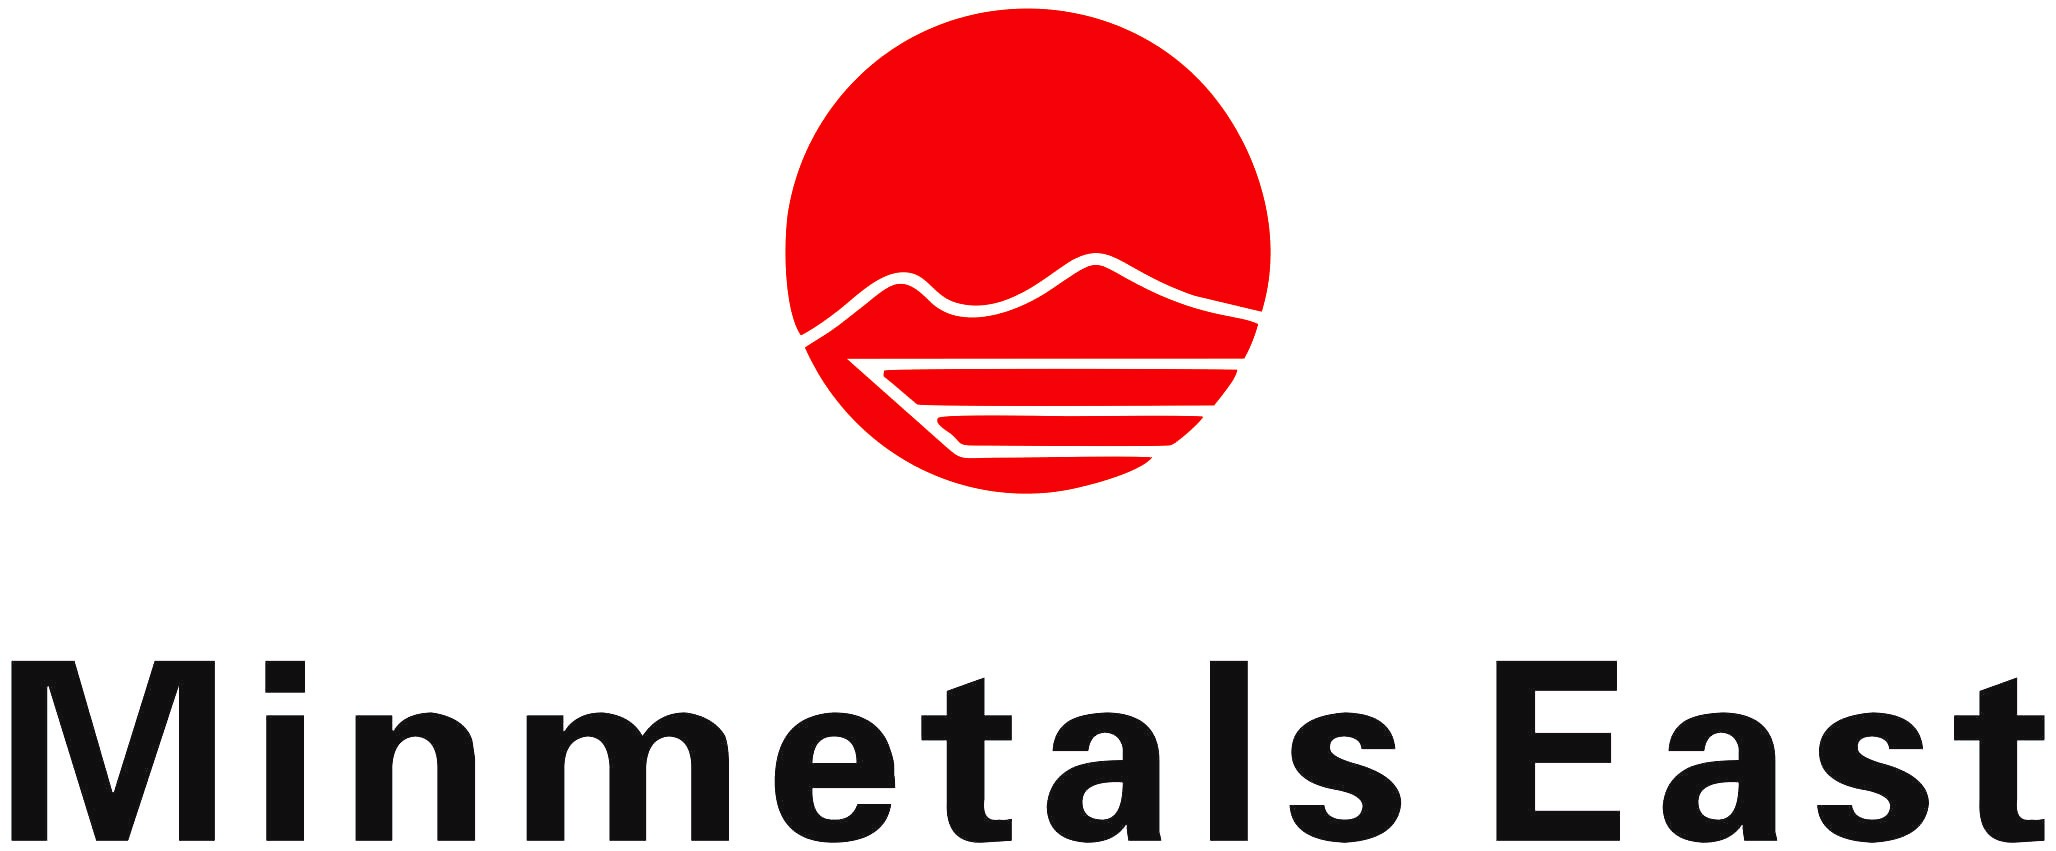 Henan Minmetals East New Materials Co., ltd